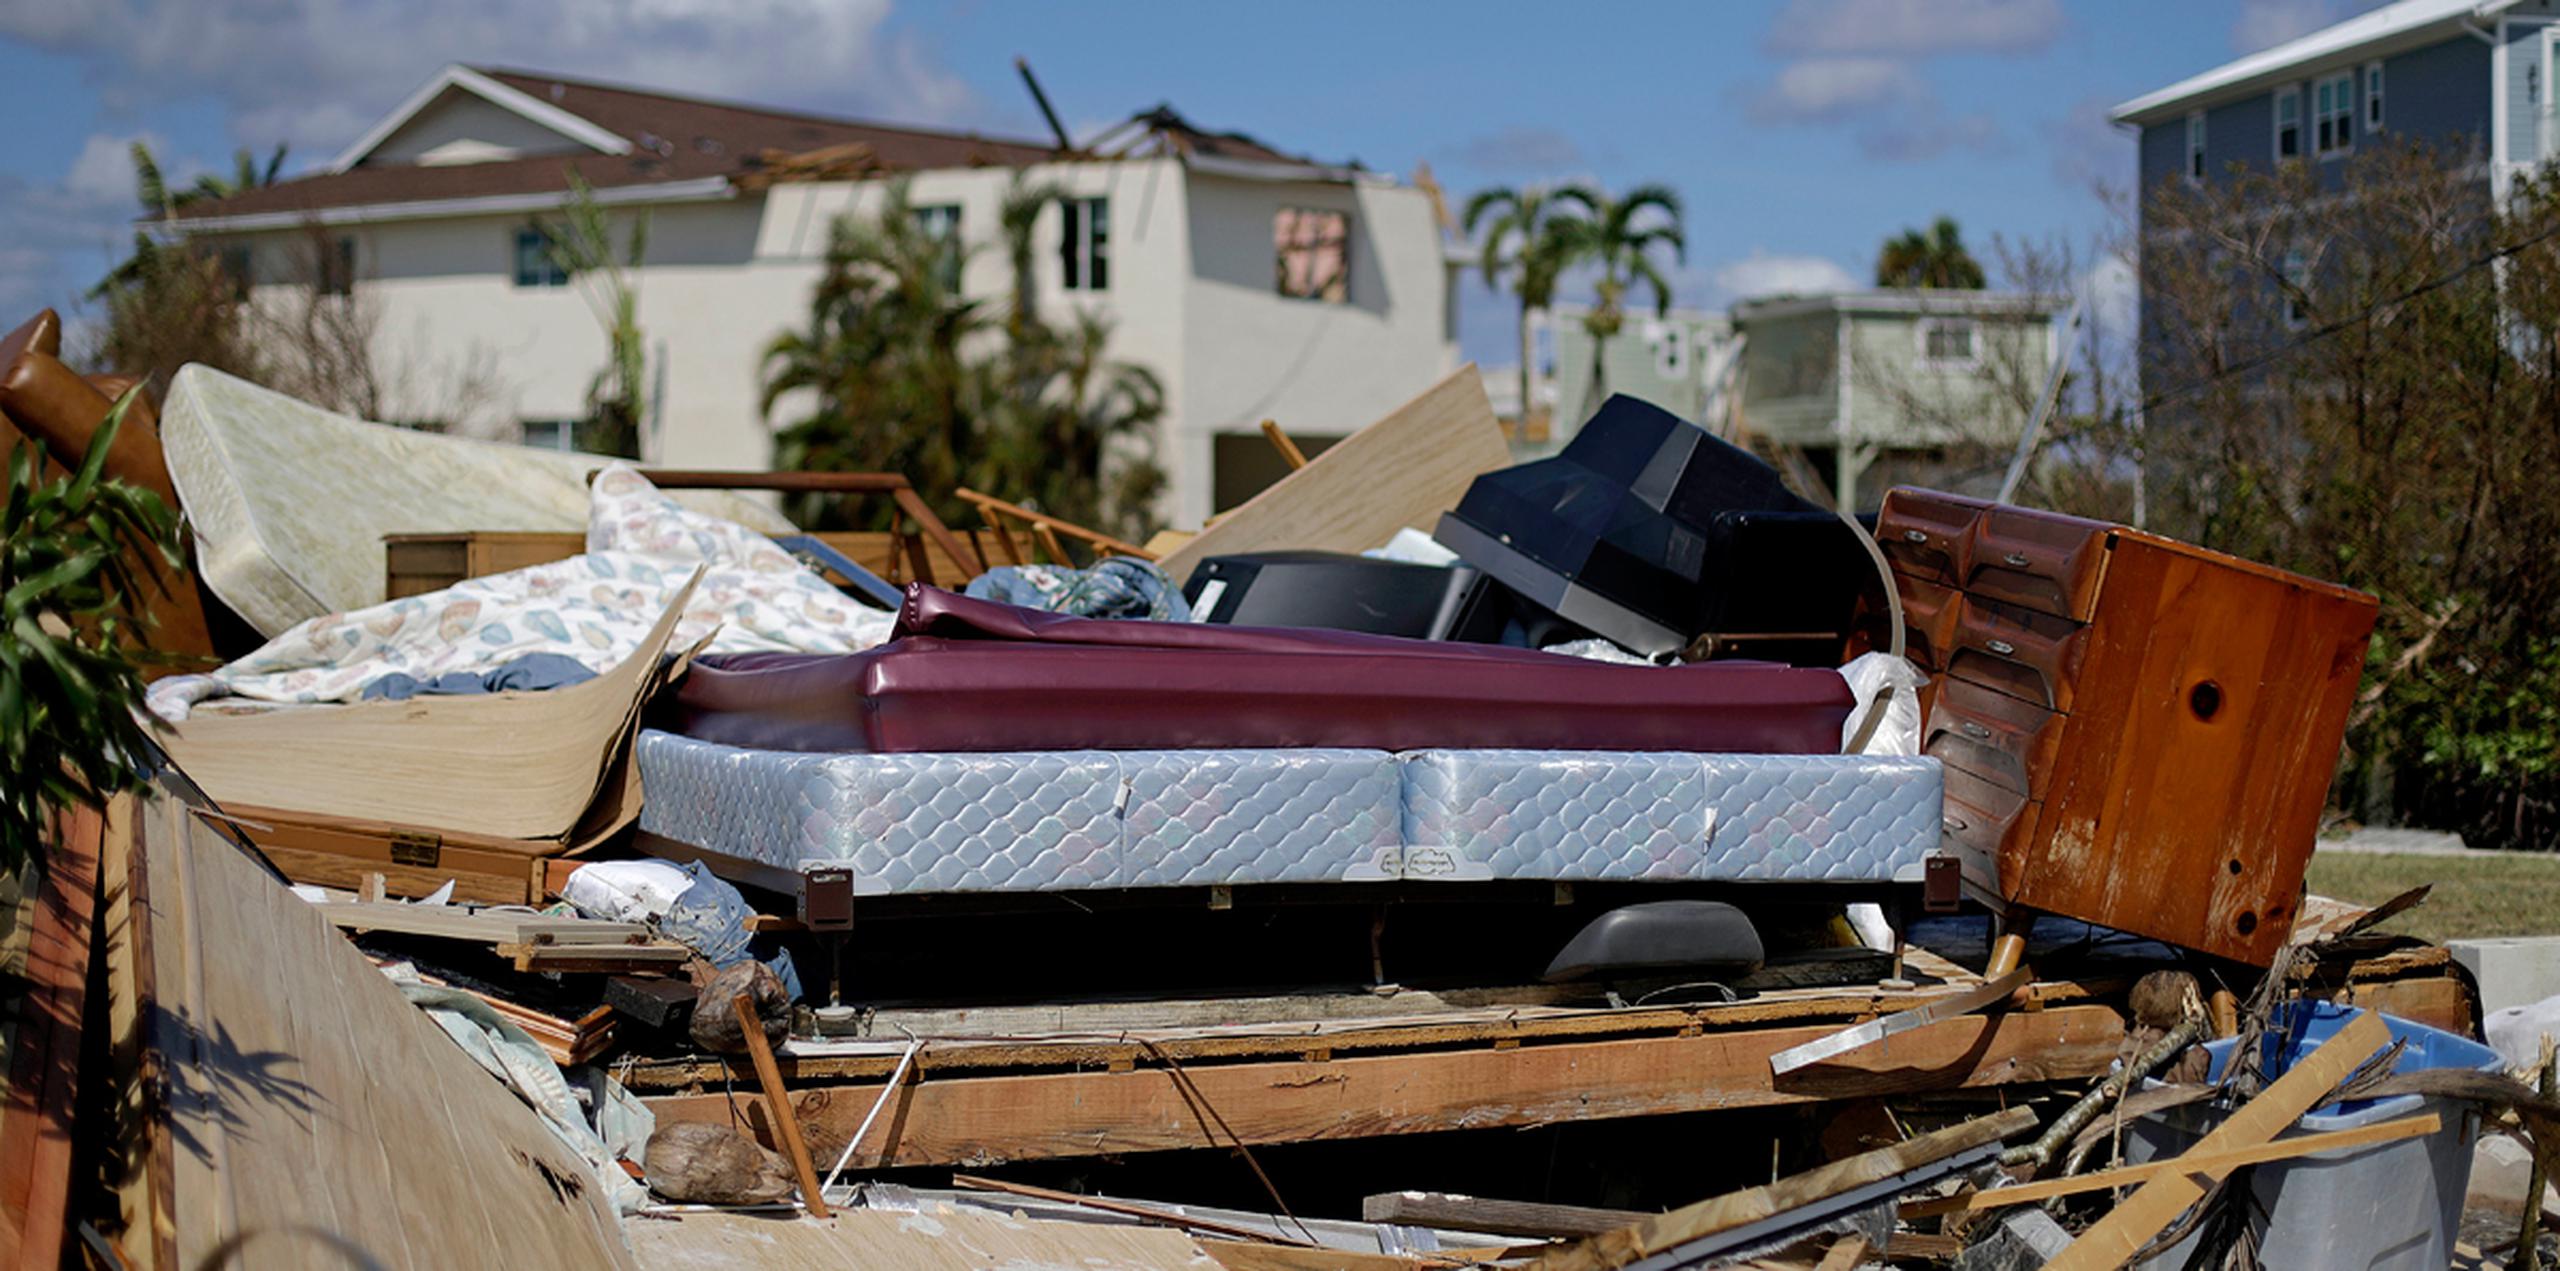 Una cama se ve en medio de los restos de una habitación, en una casa destrozada por el huracán Irma en Goodland, Florida. (AP)